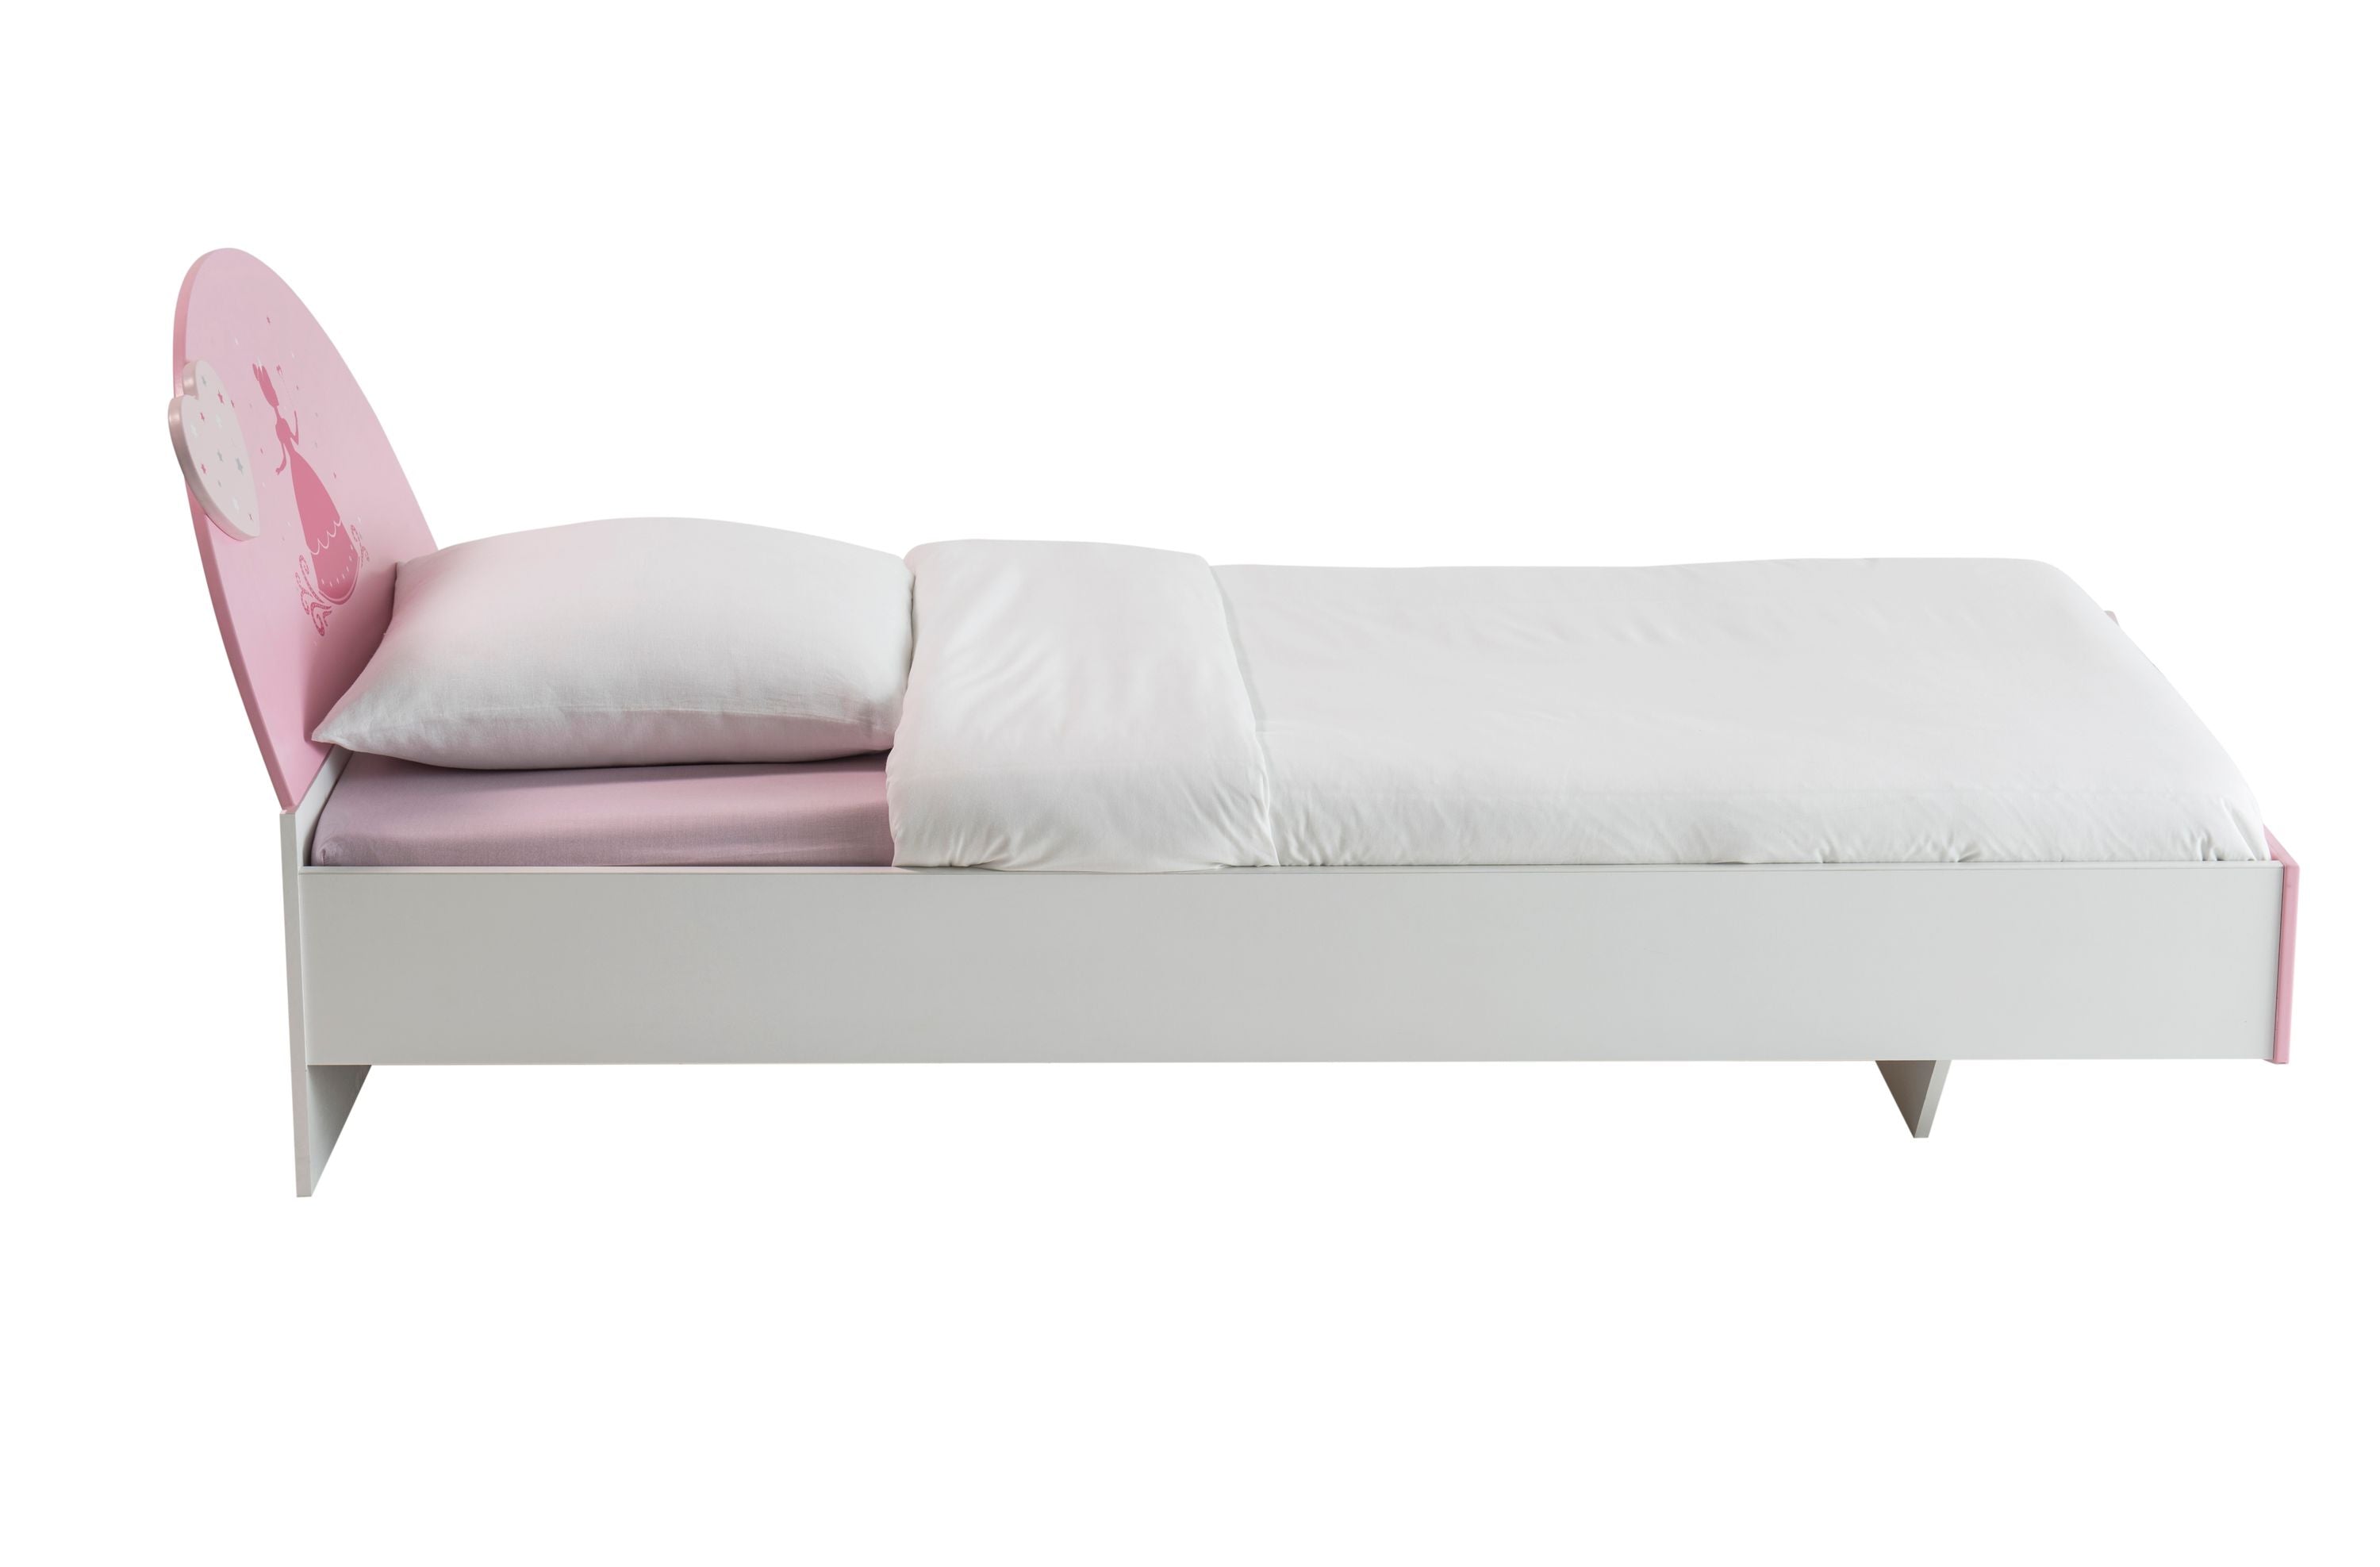 90*190 cm Kinderbett Lotte mit schönem geschwungenen Kopf- und Fußteil weiß - rosa